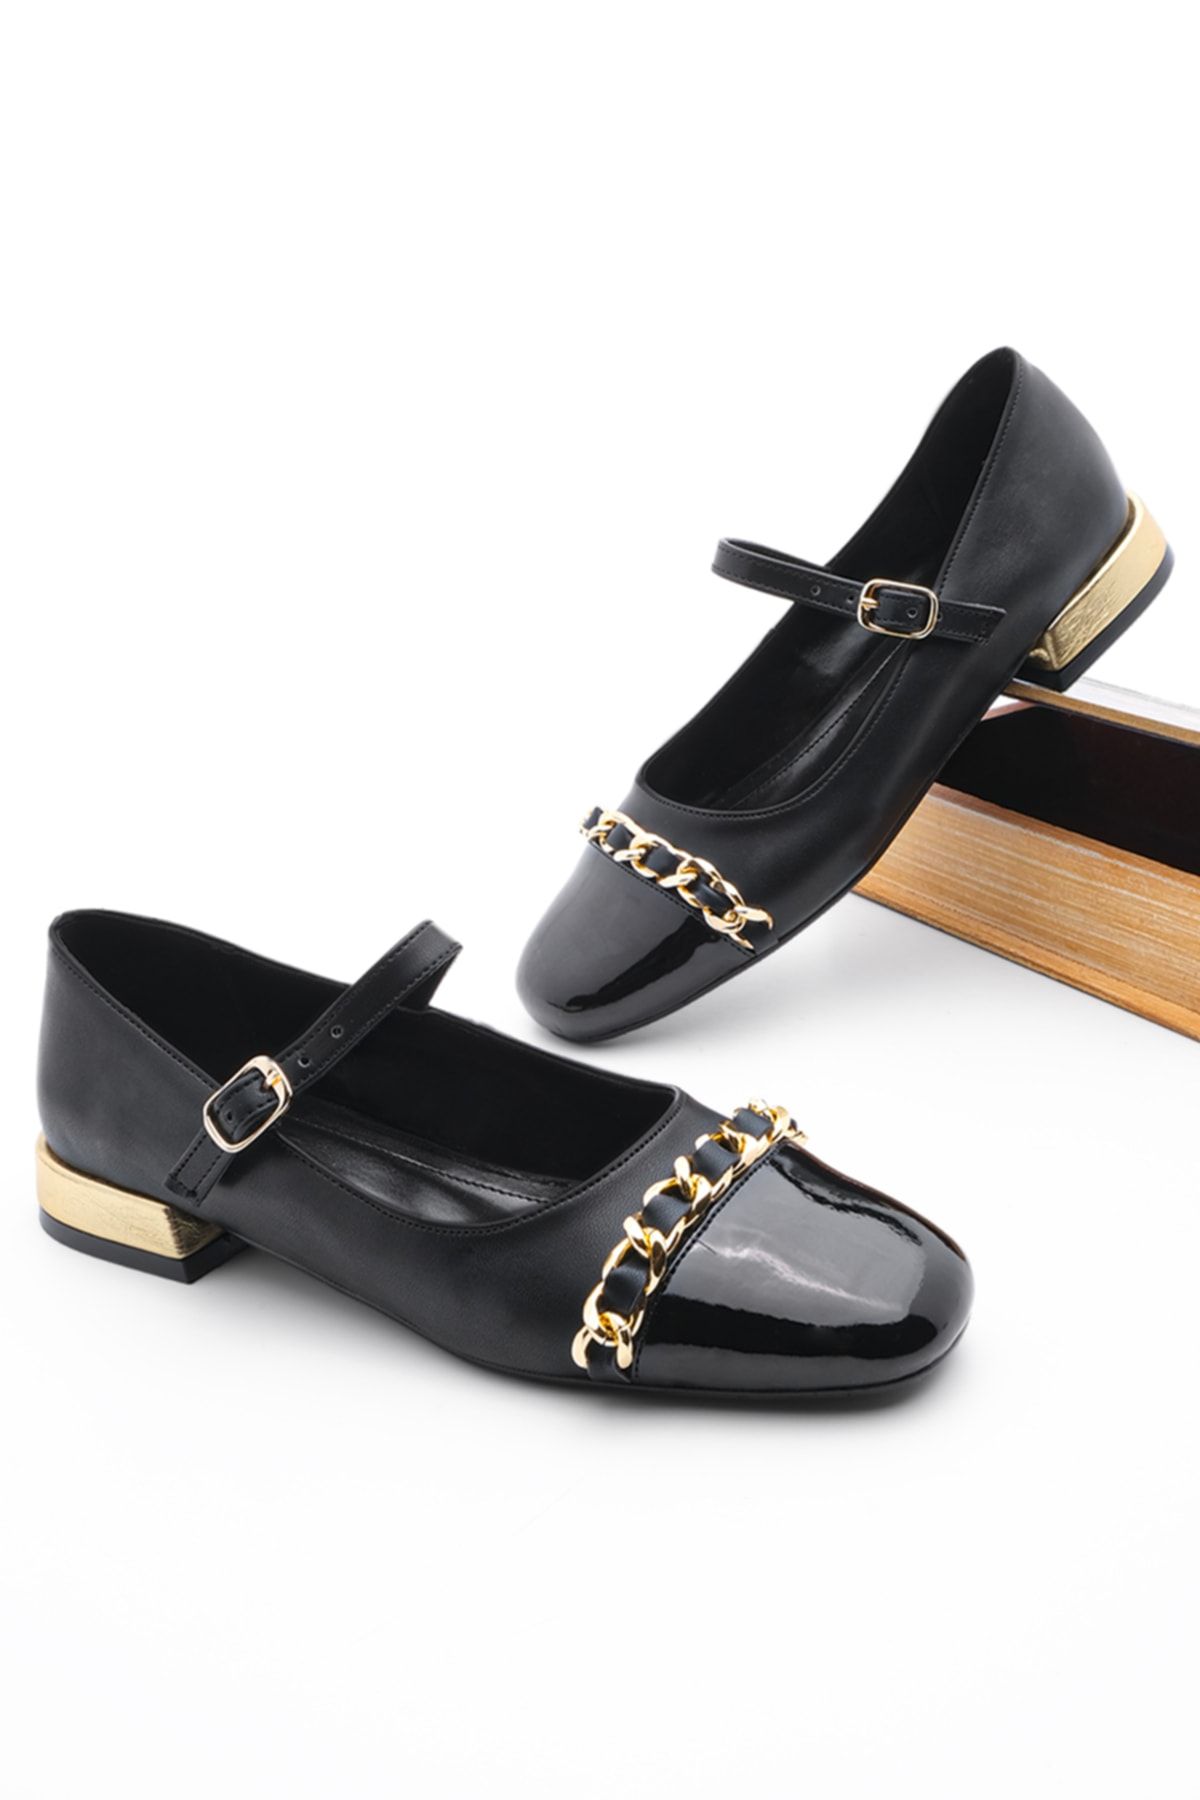 Marjin Kadın Günlük Ayakkabı Altın Renk Detaylı Topuk Zincirli Küt Burun Resva Siyah